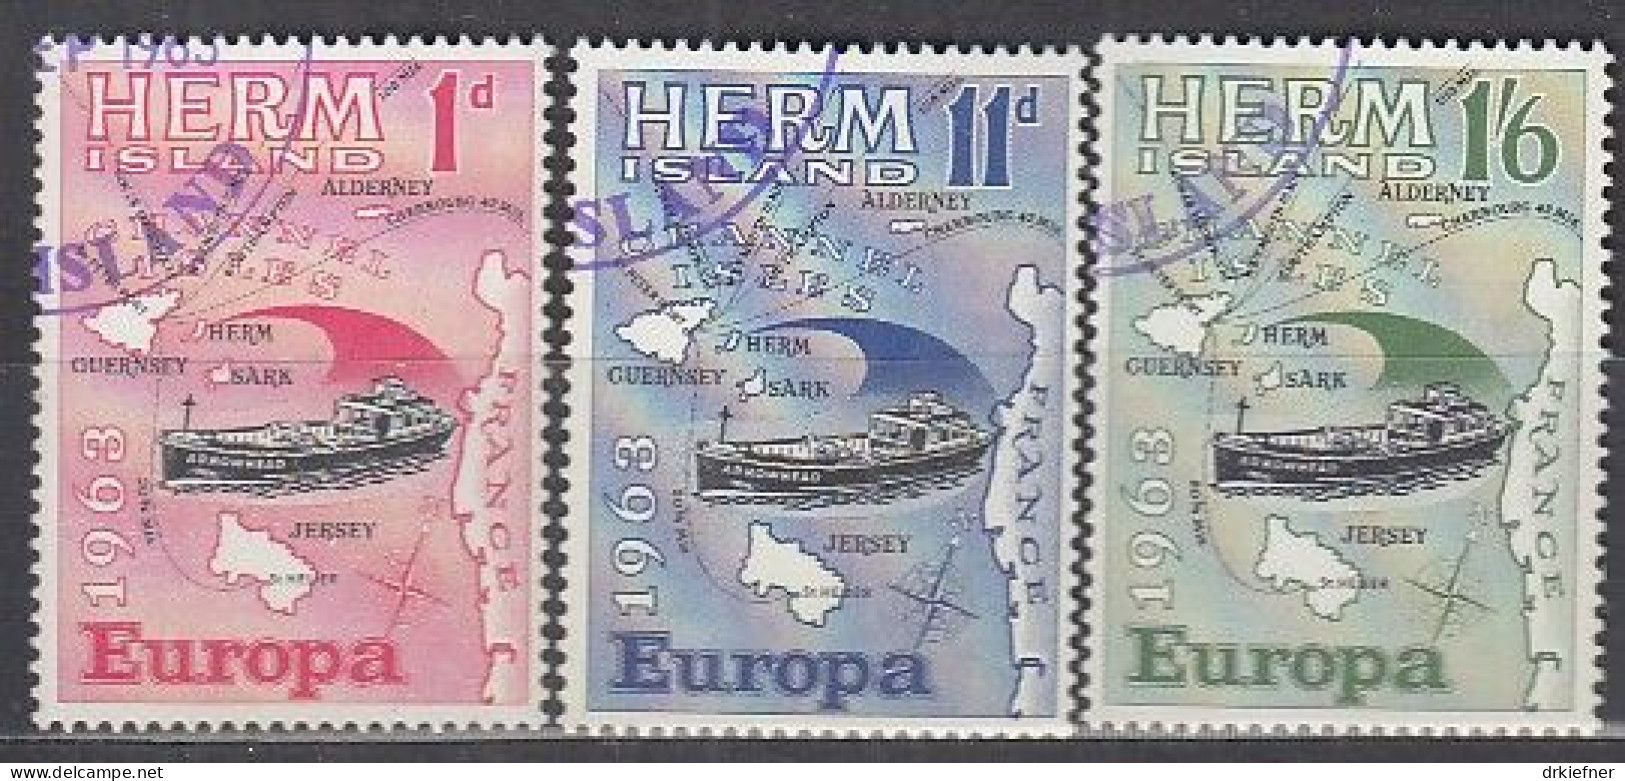 INSEL HERM (Guernsey), Nichtamtl. Briefmarken, 3 Marken, Gestempelt, Europa 1963, Landkarte, Schiff - Guernsey